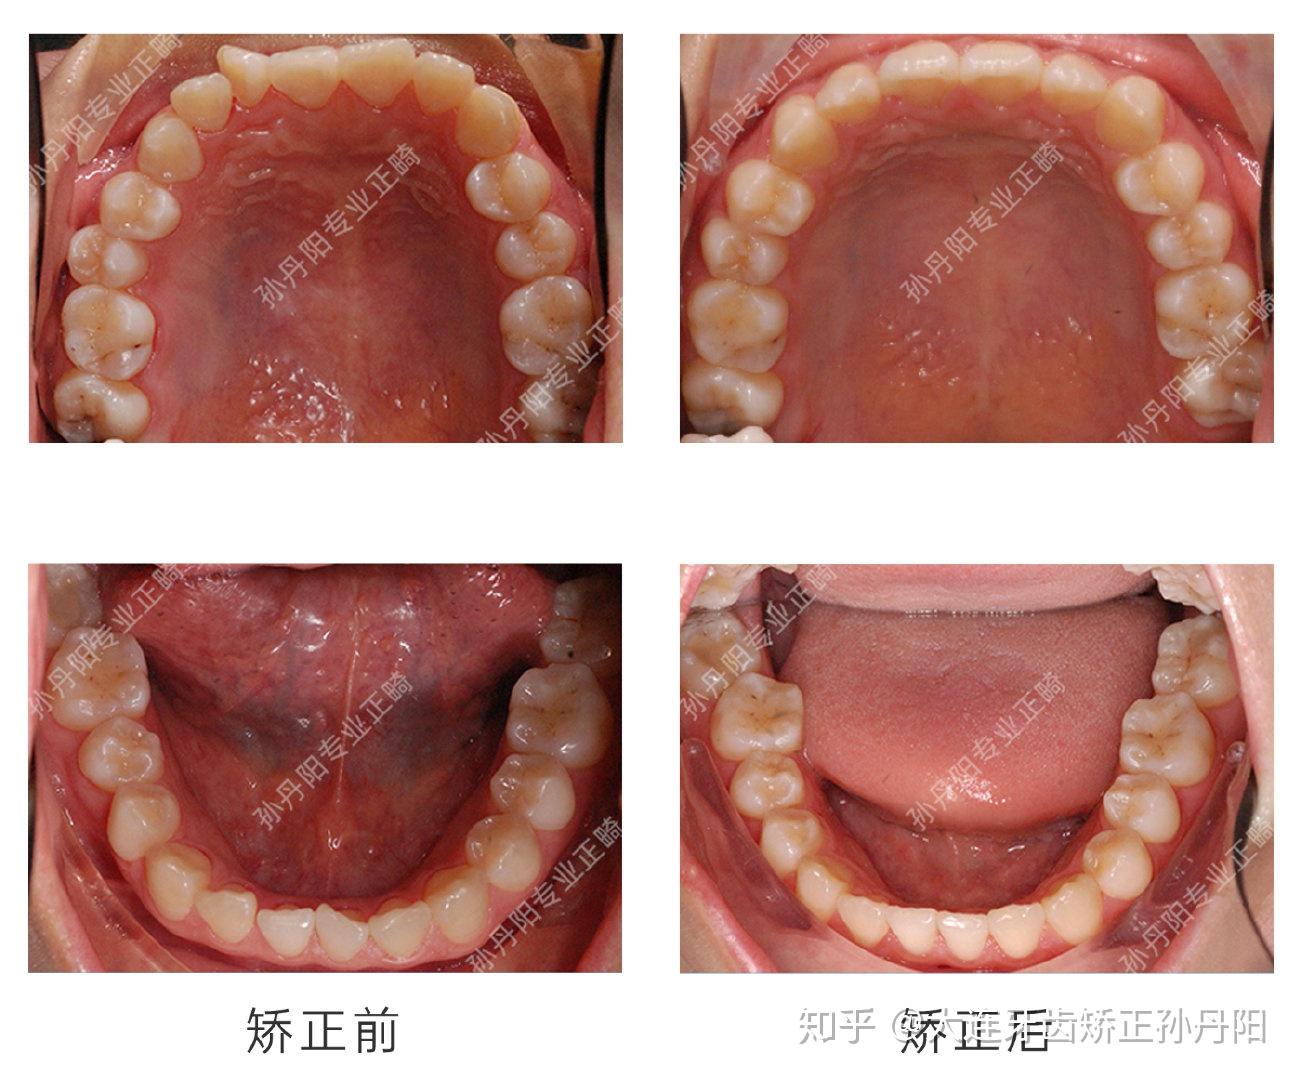 大连舌侧矫正：拔除左上门牙与侧切牙间的多生牙矫治牙齿拥挤 - 知乎